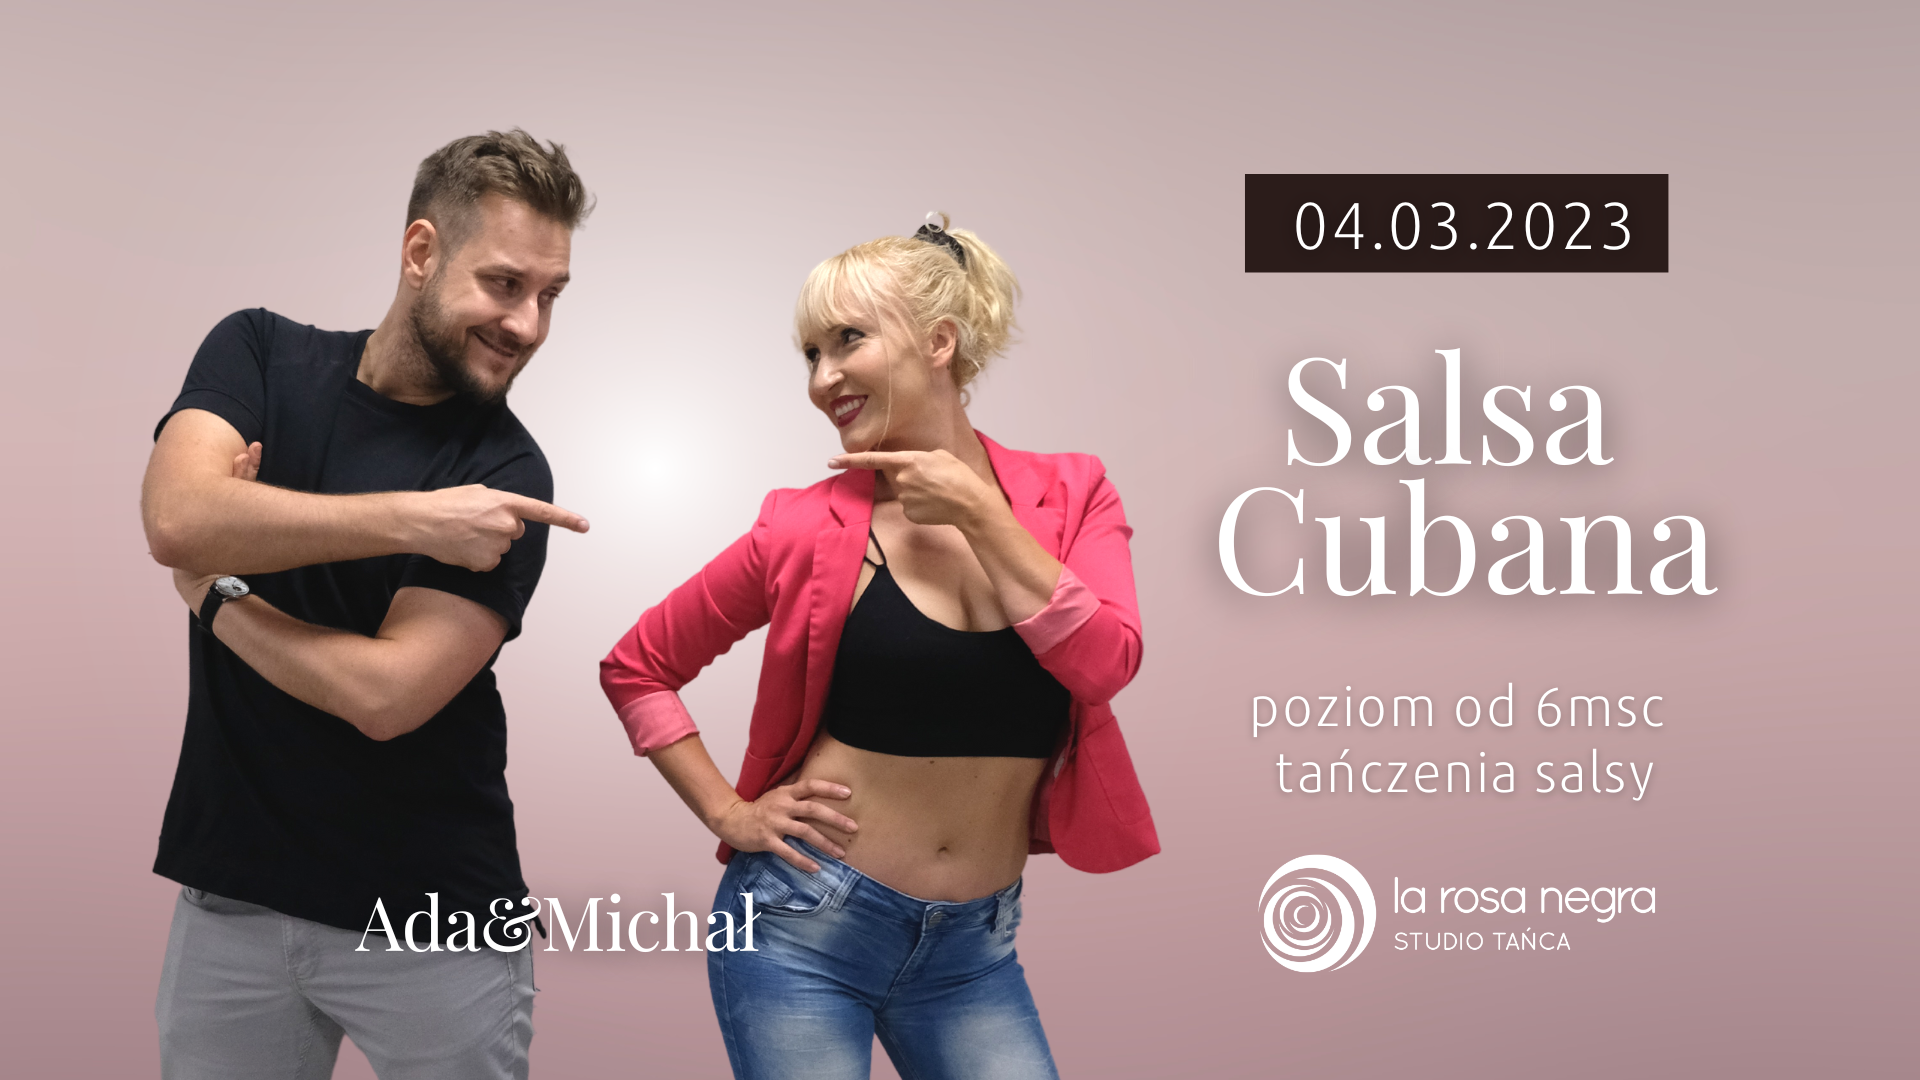 Salsa cubana z Adą&Michałem - zajęcia weekendowe